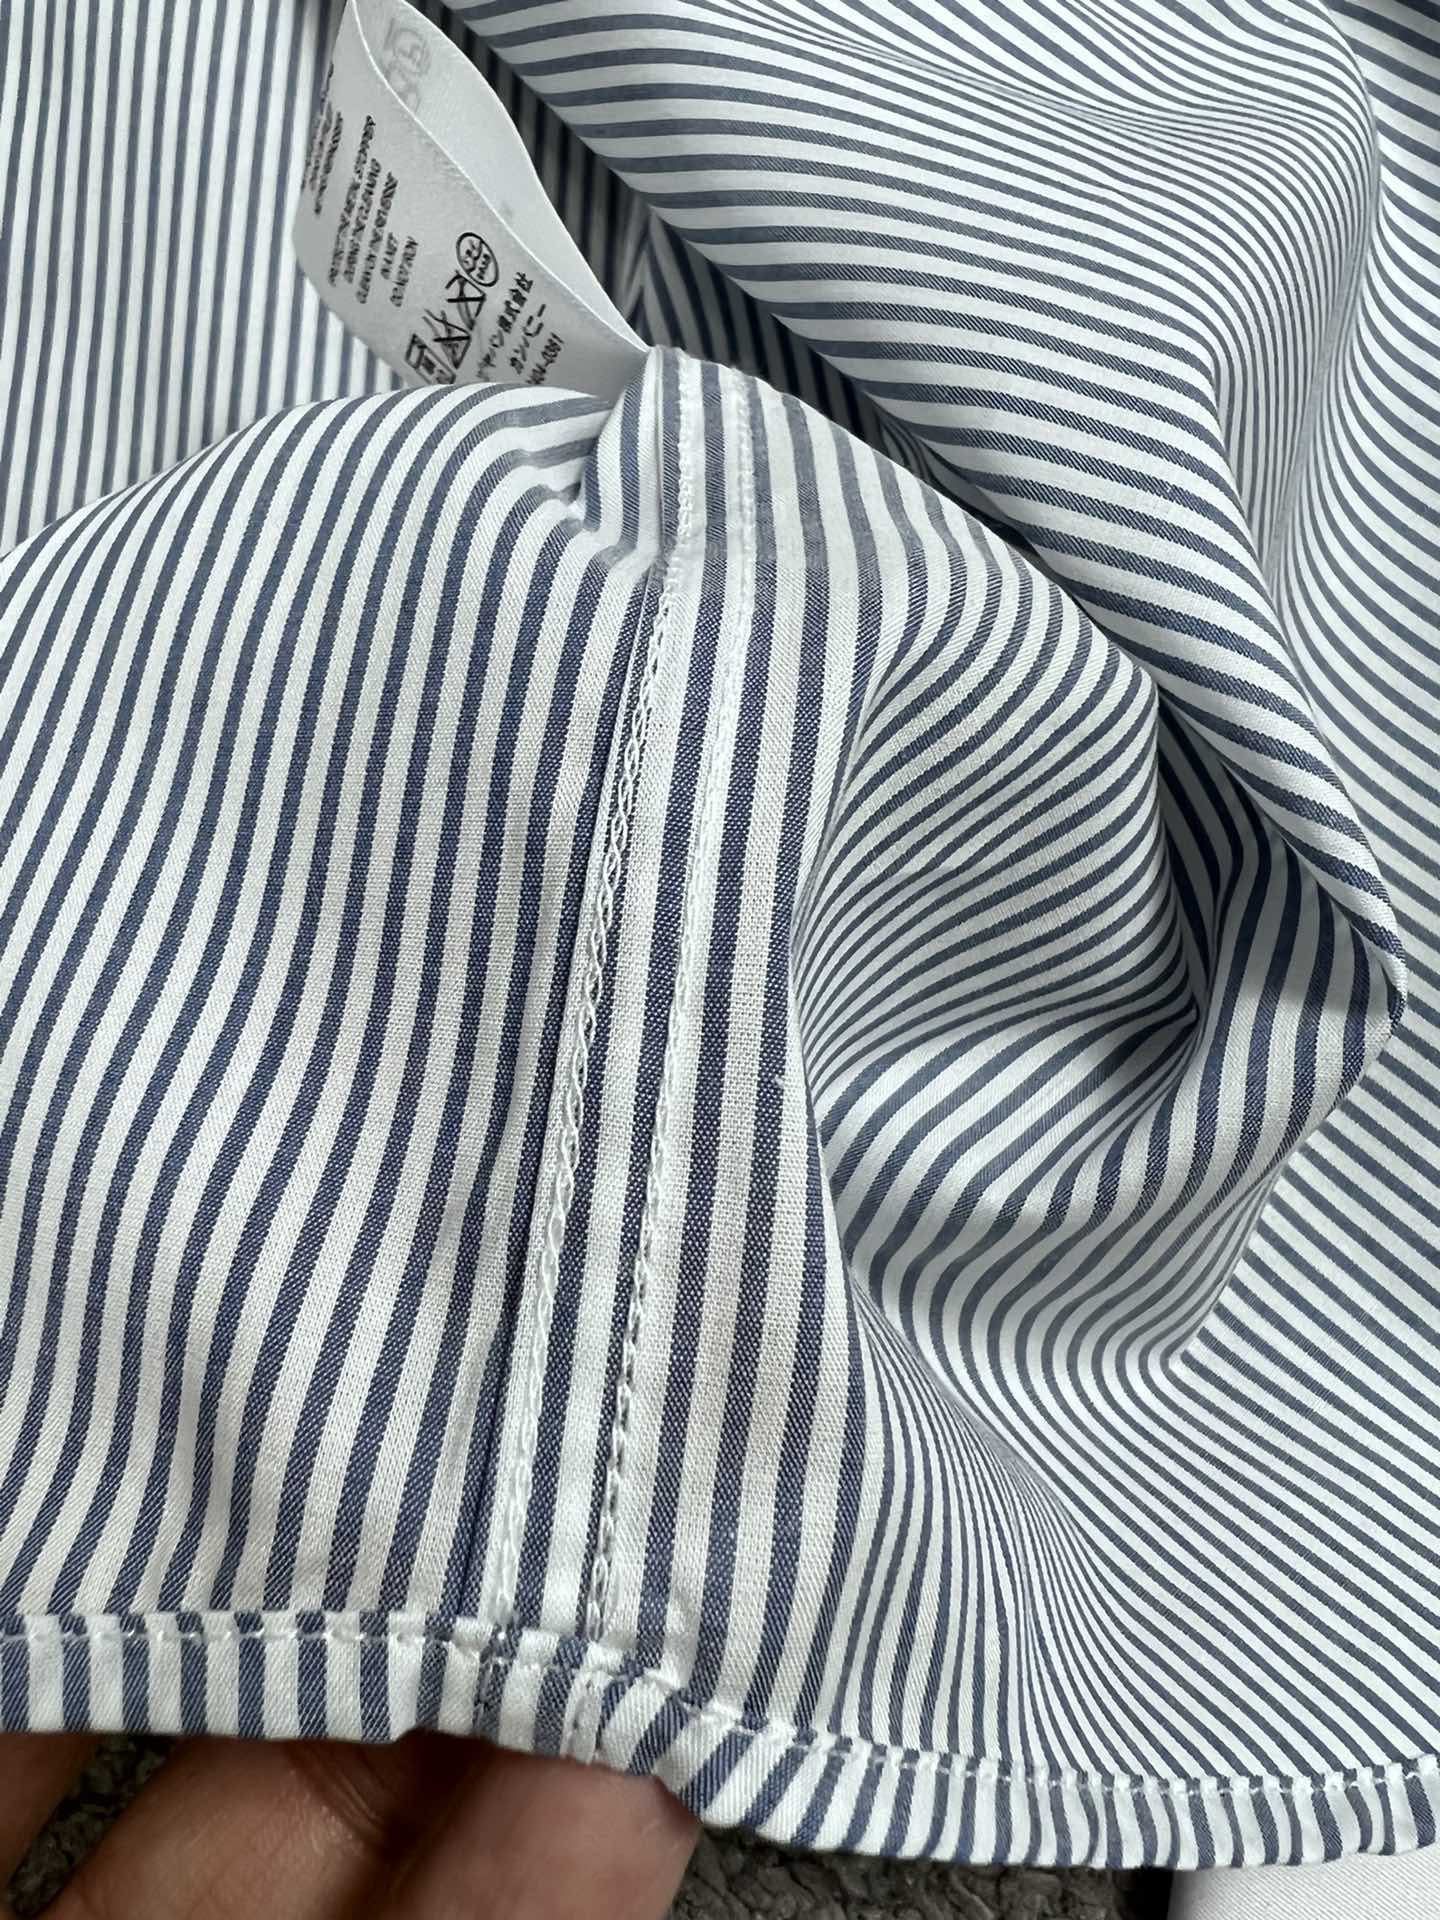 CD迪家24SS春夏高端系列条纹撞布法式袖扣衬衫SMLXLXXL